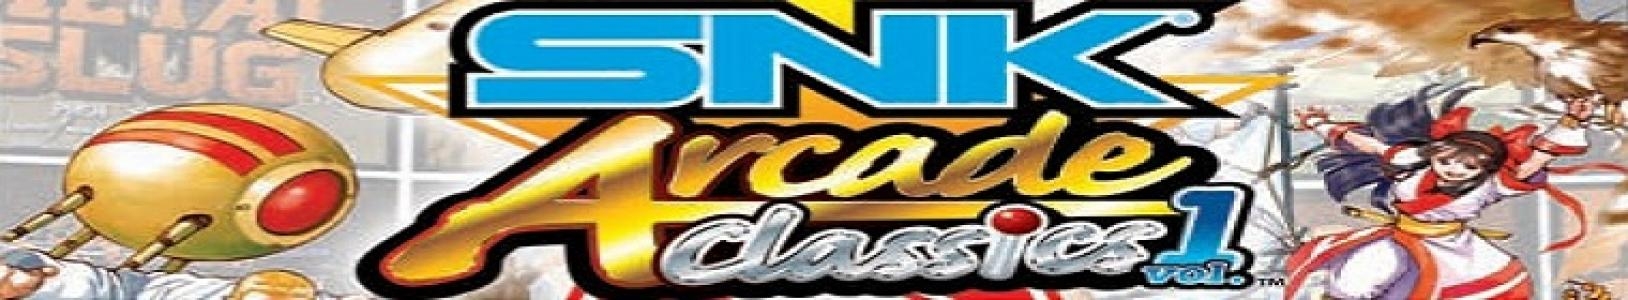 SNK Arcade Classics Vol. 1 banner